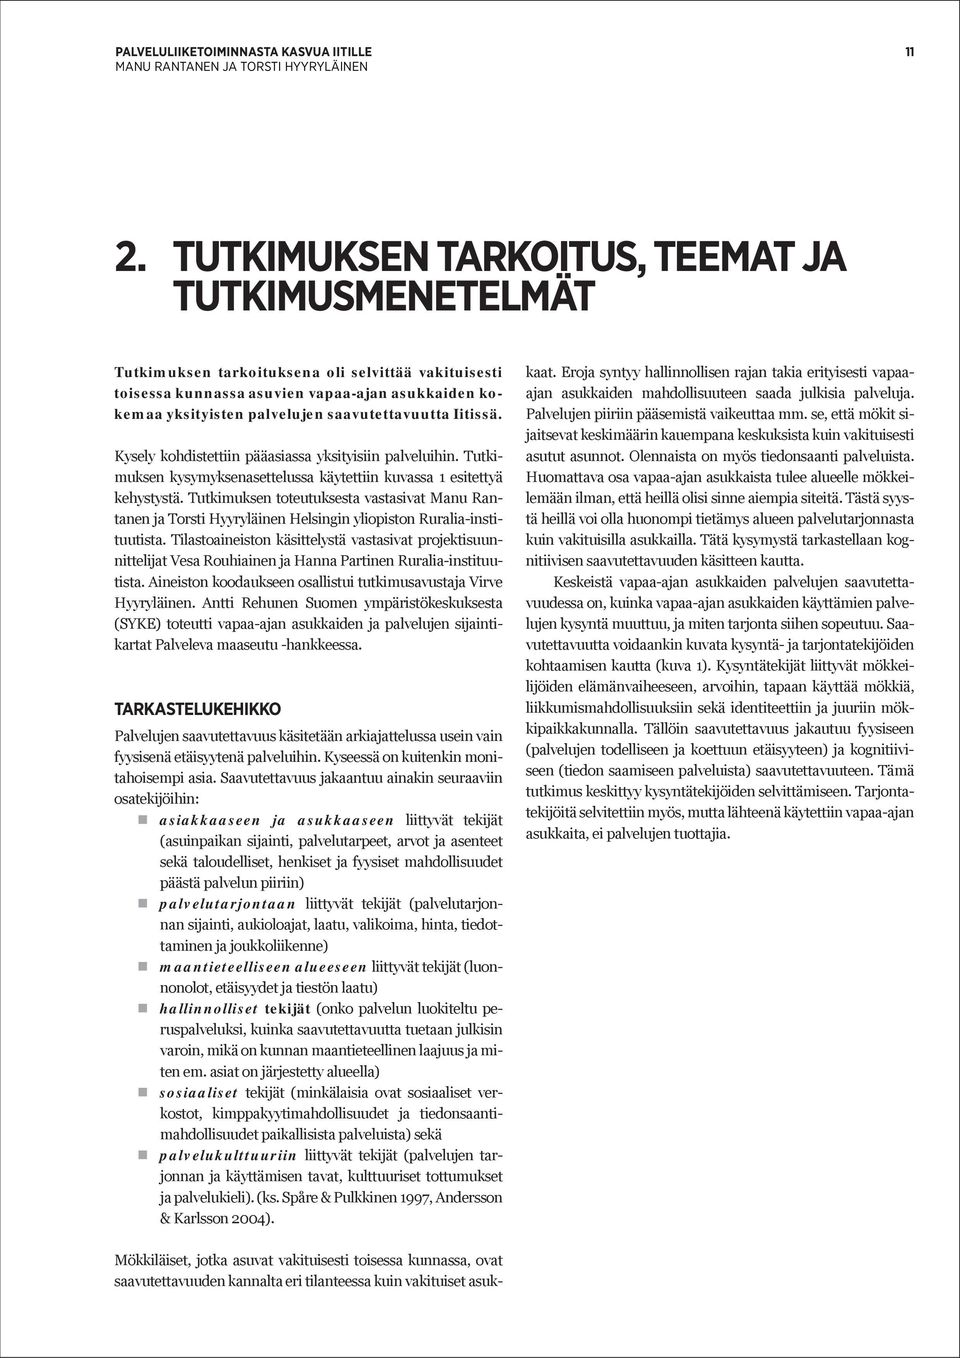 Tutkimuksen toteutuksesta vastasivat Manu Rantanen ja Torsti Hyyryläinen Helsingin yliopiston Ruralia-instituutista.